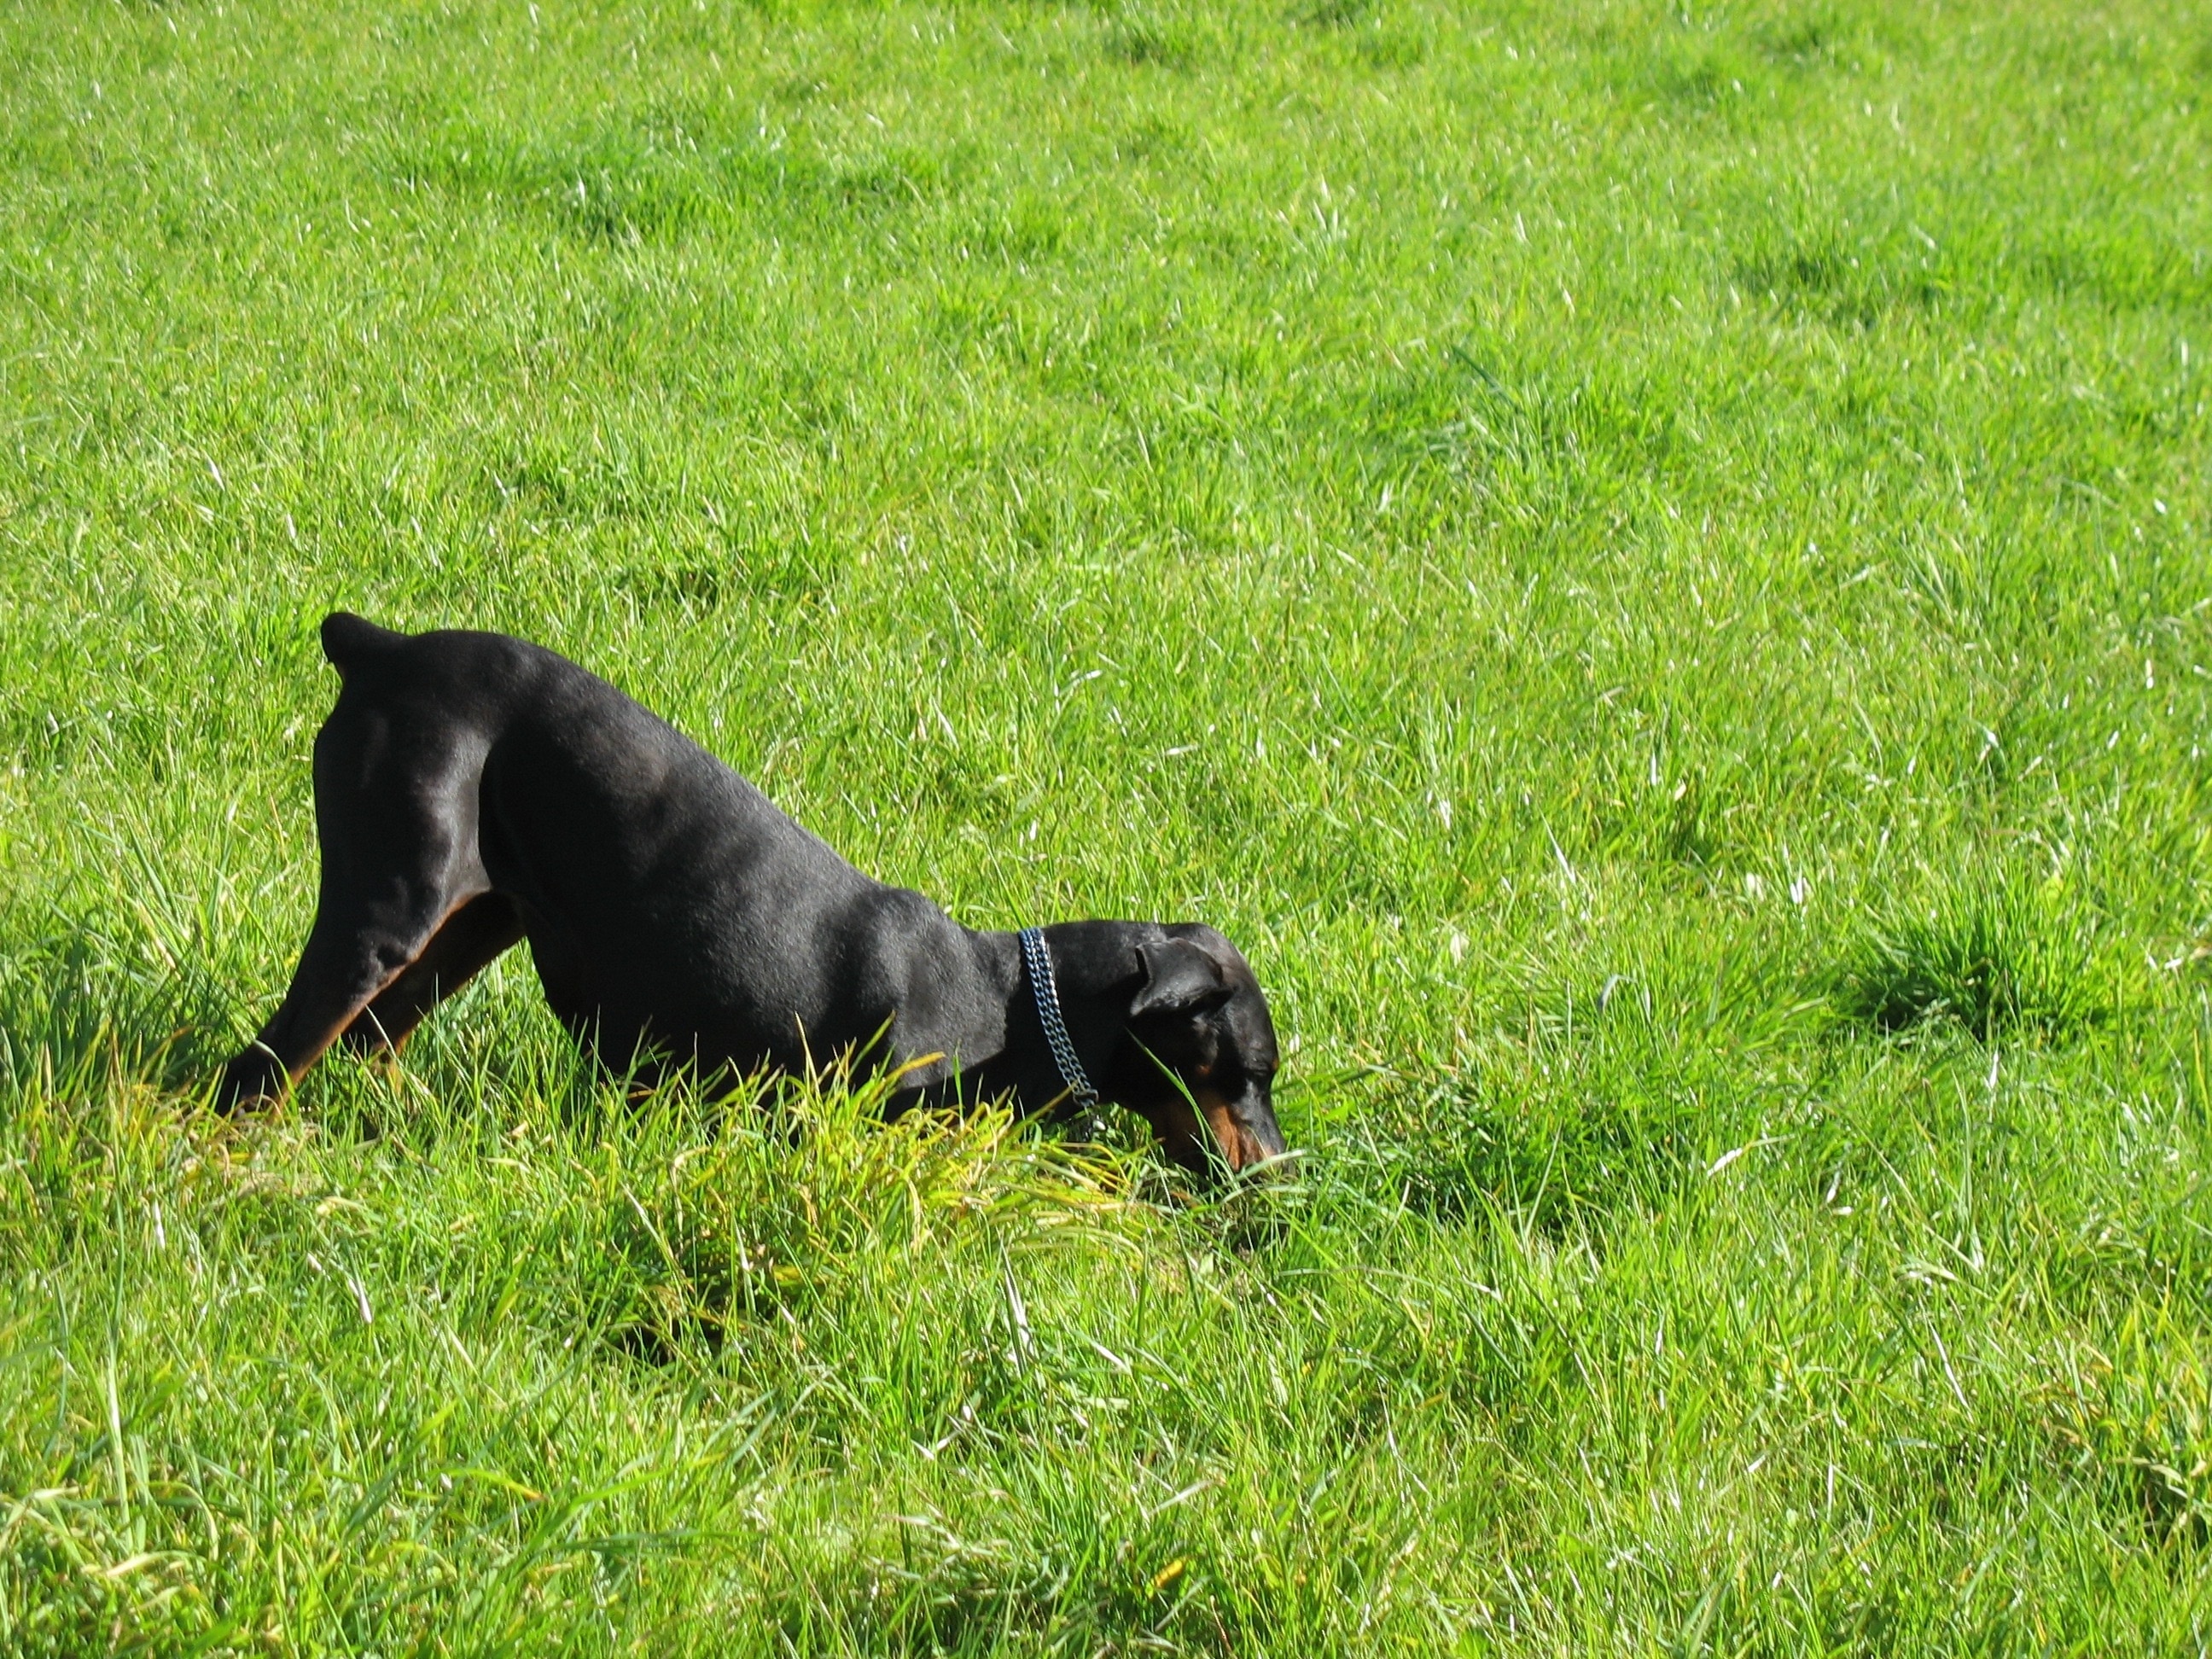 black coated dog